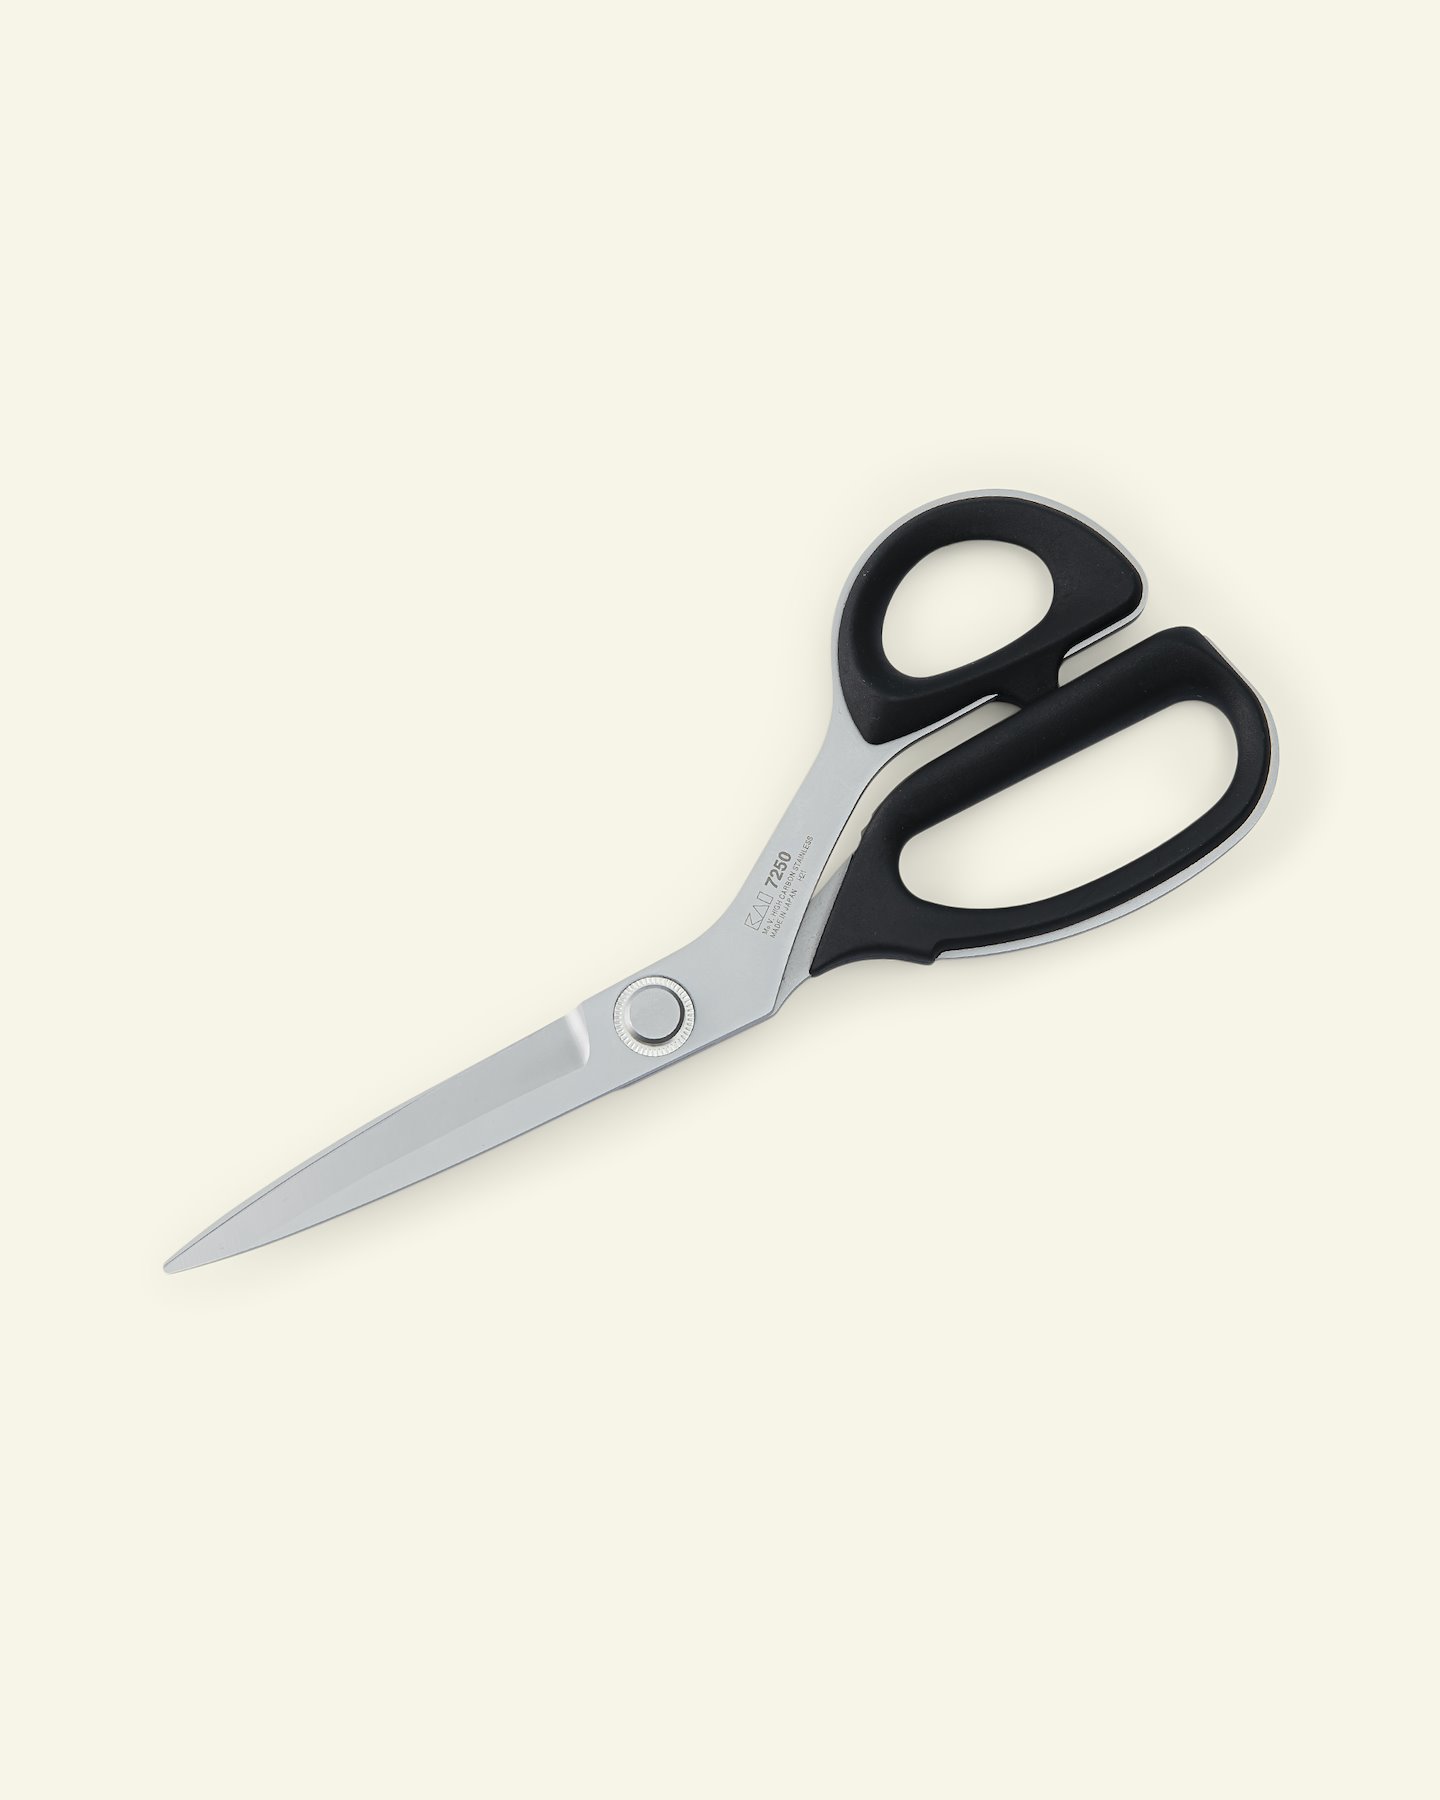 KAI tailor scissors  25cm 42081_pack